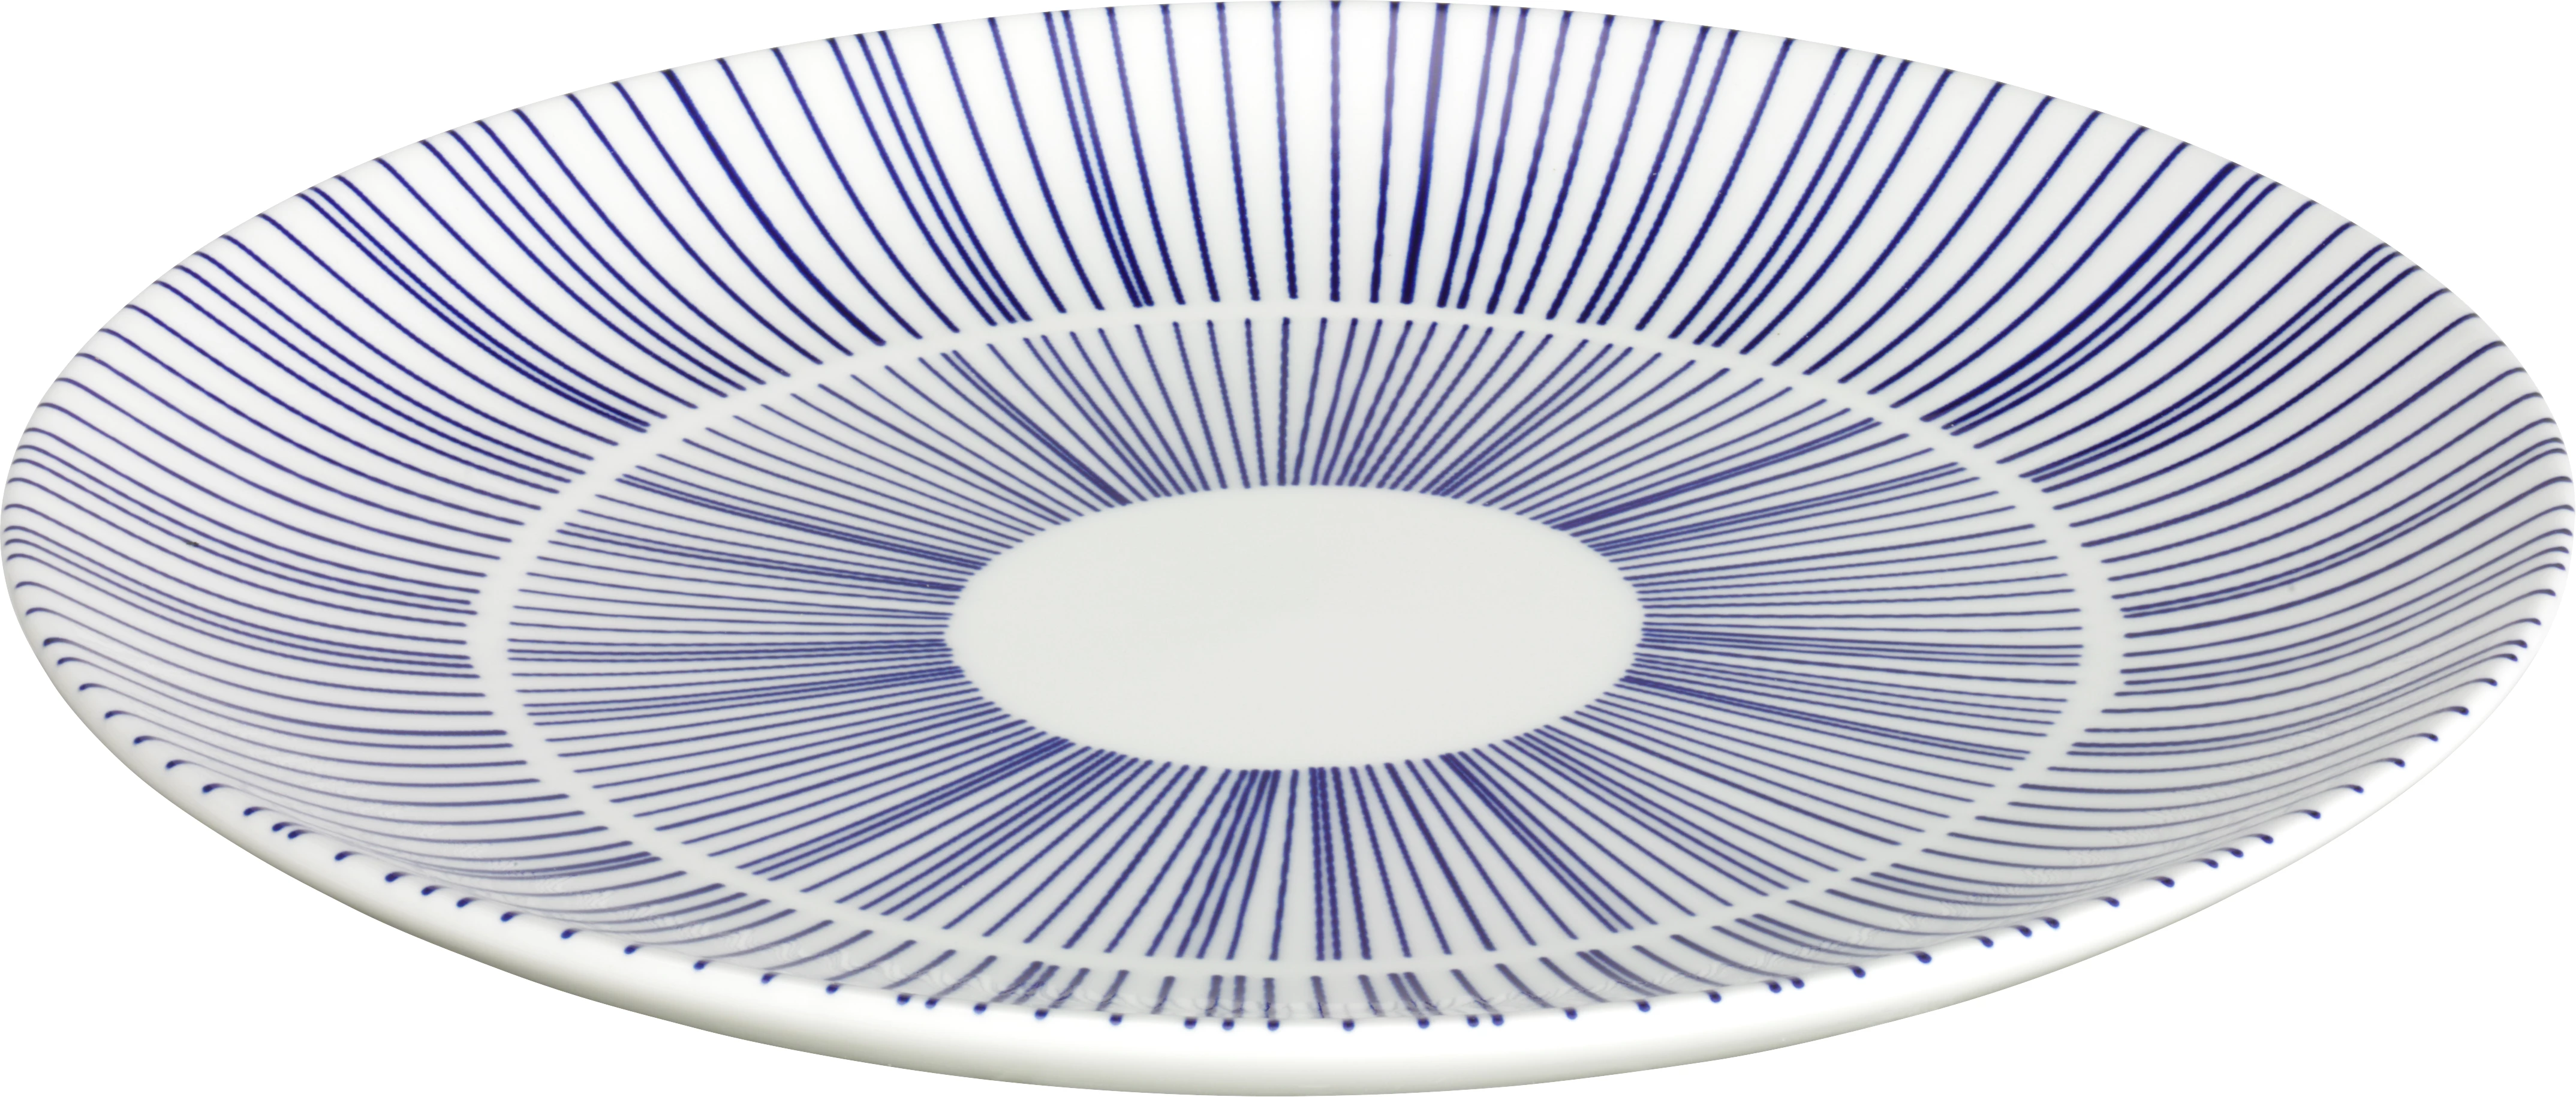 Porto tallerken uden fane, flad, hvid/blå, ø20,5 cm